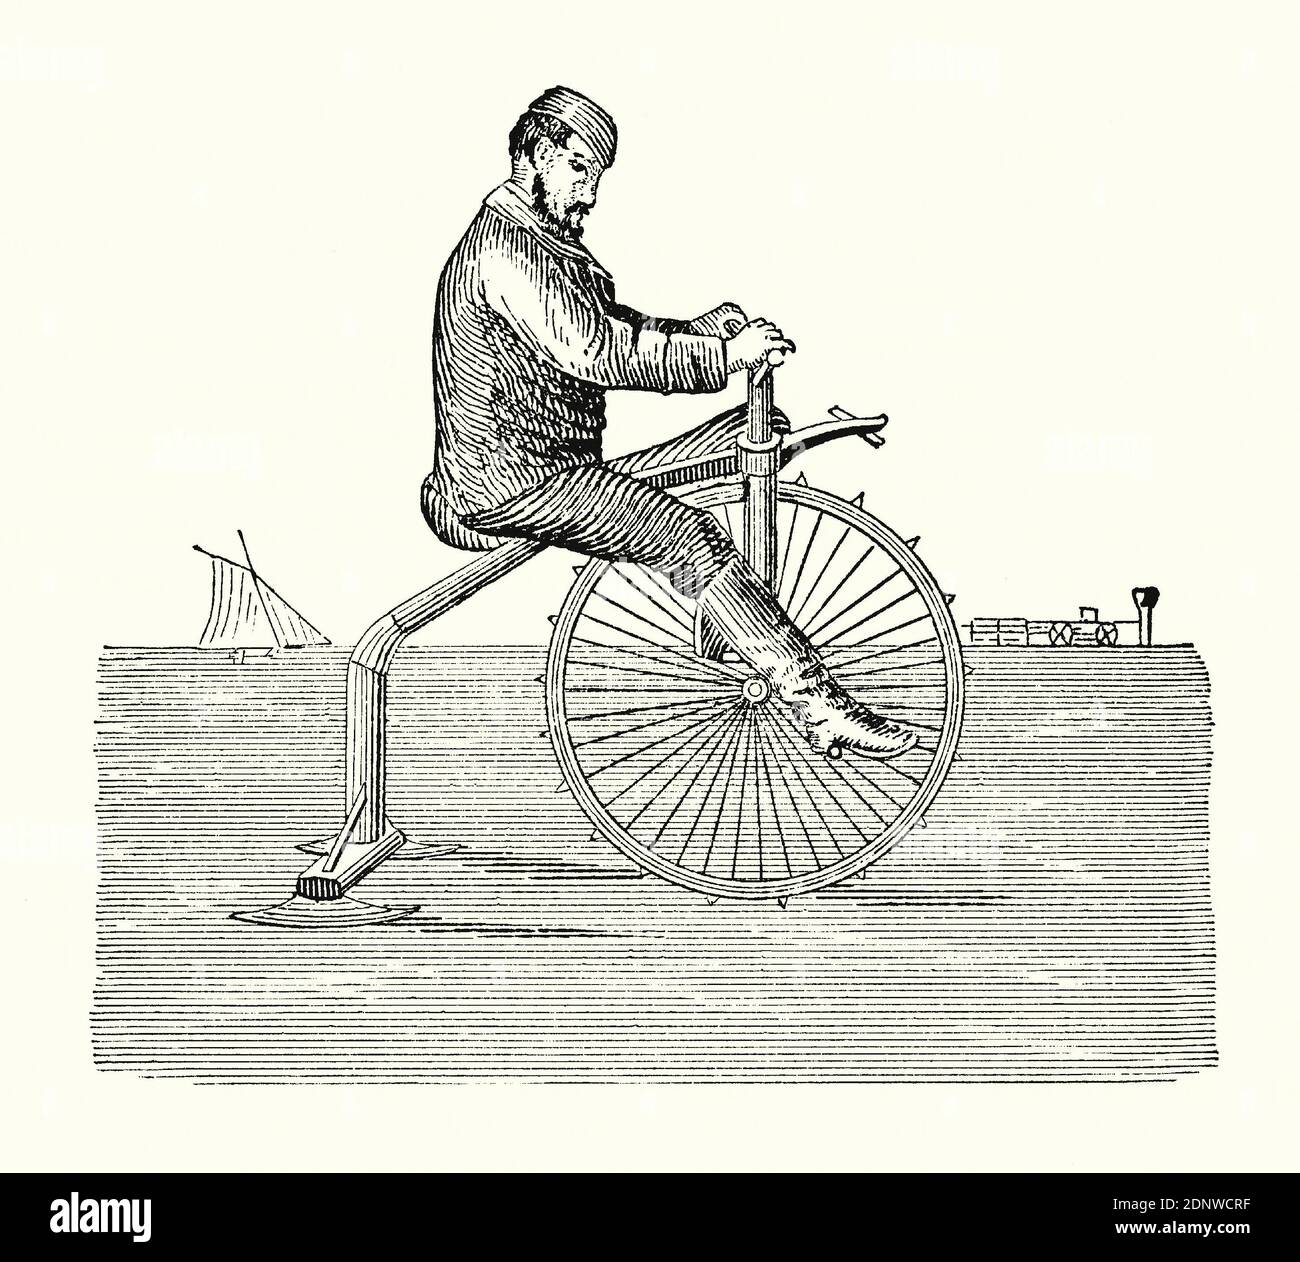 Une ancienne gravure d'un homme qui fait du vélo de "velocide de glace" dans les années 1800. Il est issu d'un livre victorien d'ingénierie mécanique des années 1880. Ce modèle de vélo, destiné à être utilisé sur des lacs ou des rivières gelés, a une roue avant à pointes et deux ‘kates’ ou des coureurs à l’arrière dans une formation de ‘tricycle’. De nombreux types de bicyclettes ont été inventés à l'époque victorienne, avec une conception qui varie du très utile au fantaisiste et amusant. Banque D'Images